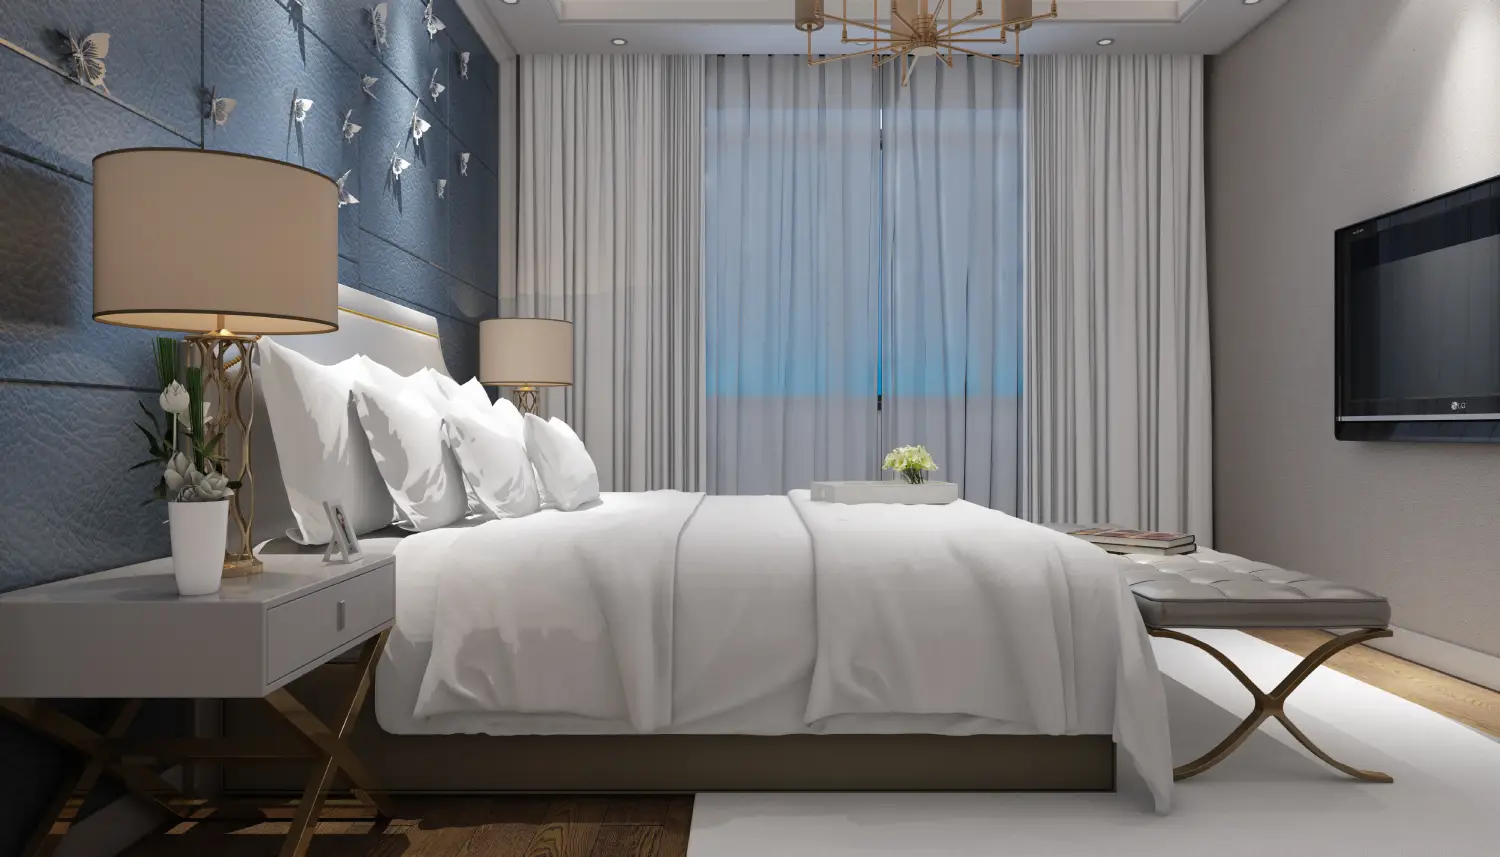 Bedroom Curtains Ideas